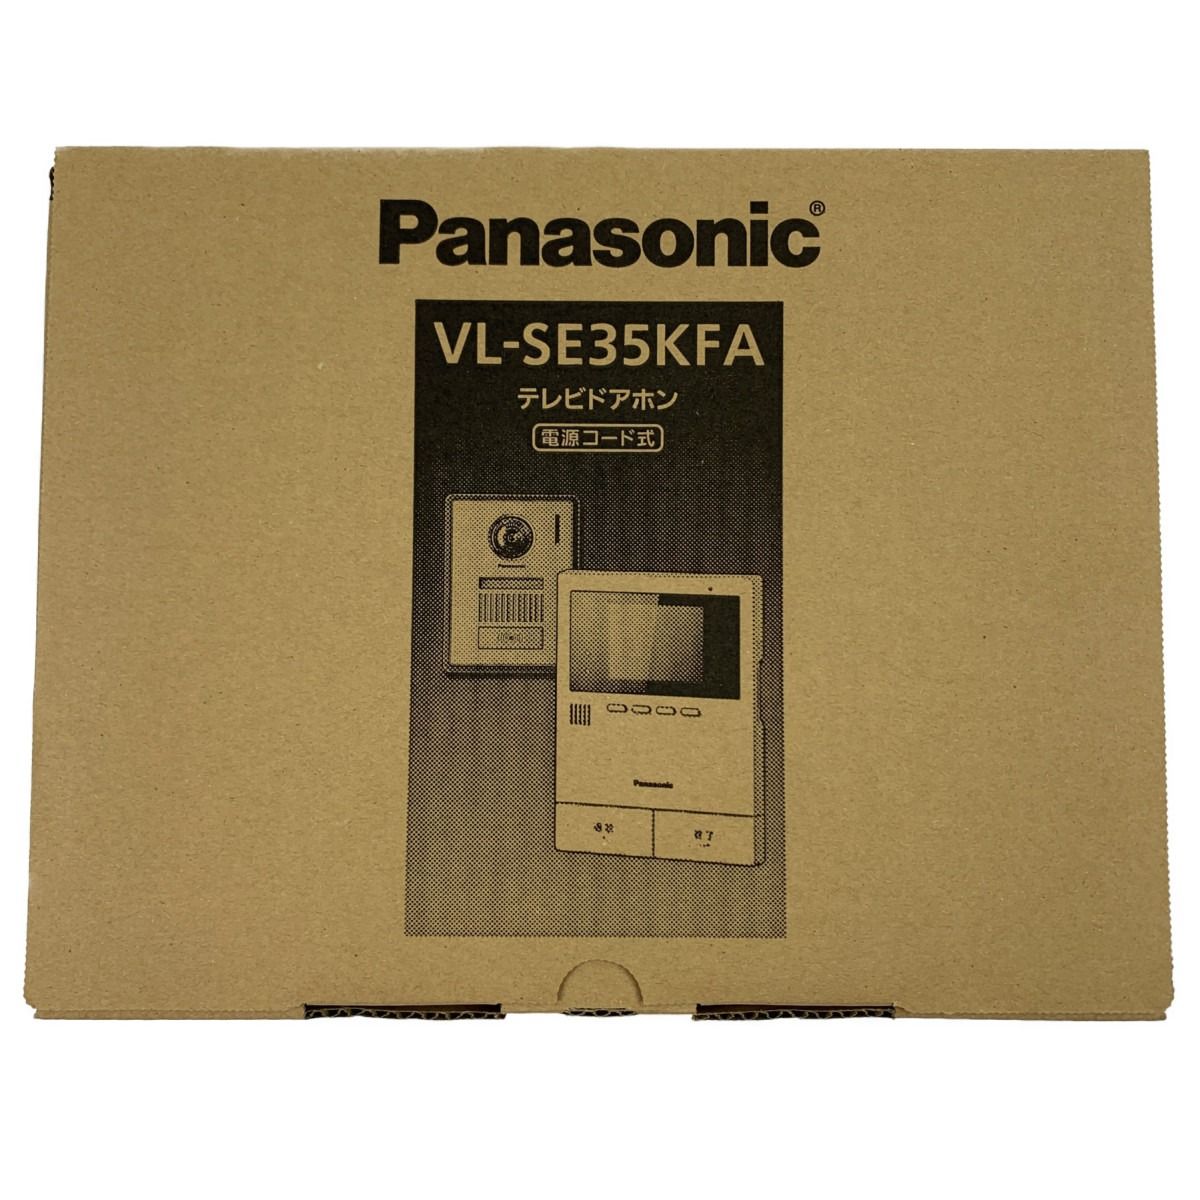 ▽▽Panasonic パナソニック テレビドアホン 電源コード式 VL-SE35KFA 開封未使用品 なんでもリサイクルビッグバンSHOP  メルカリ